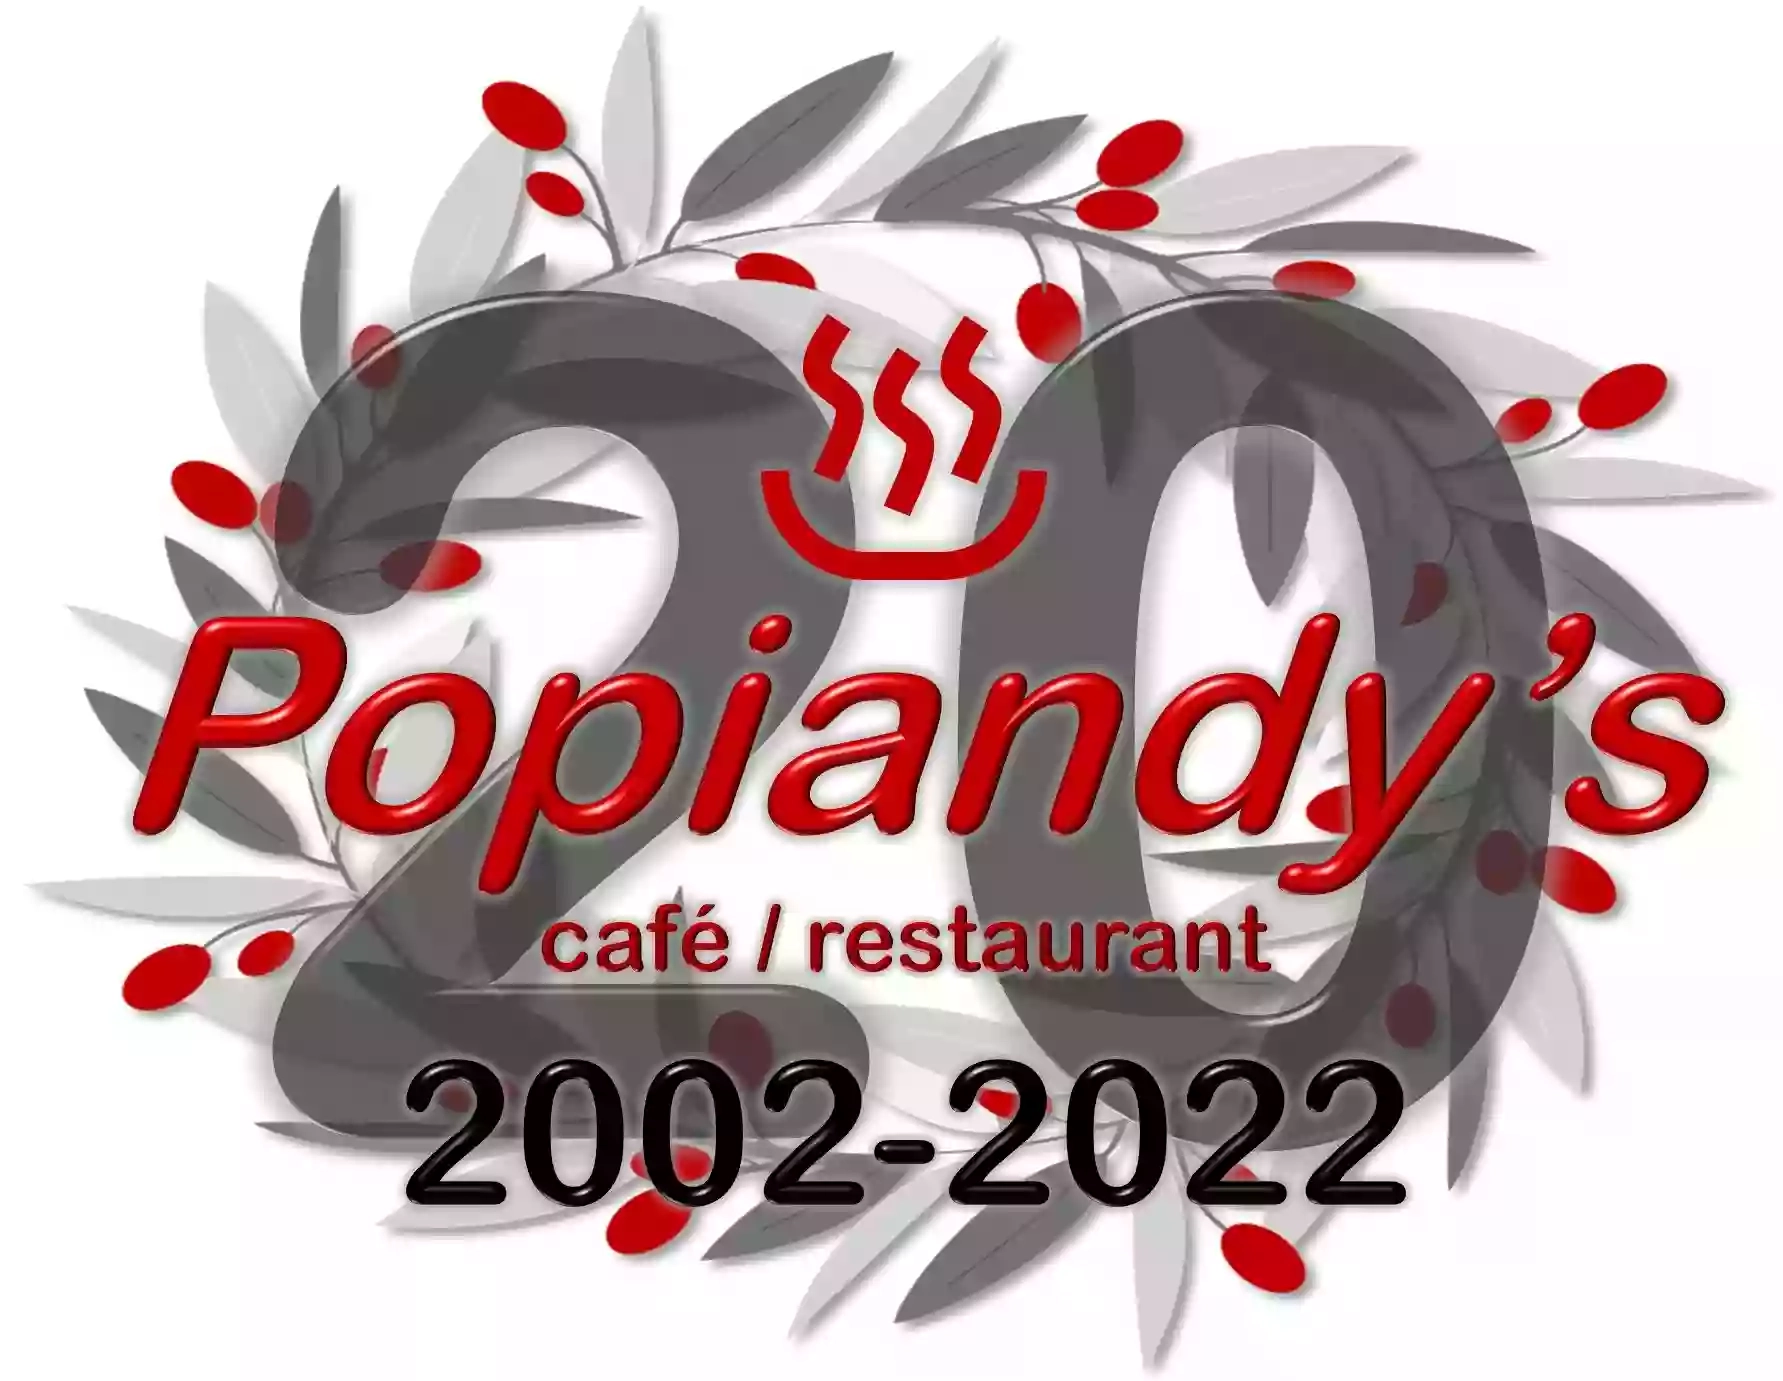 Popiandy's